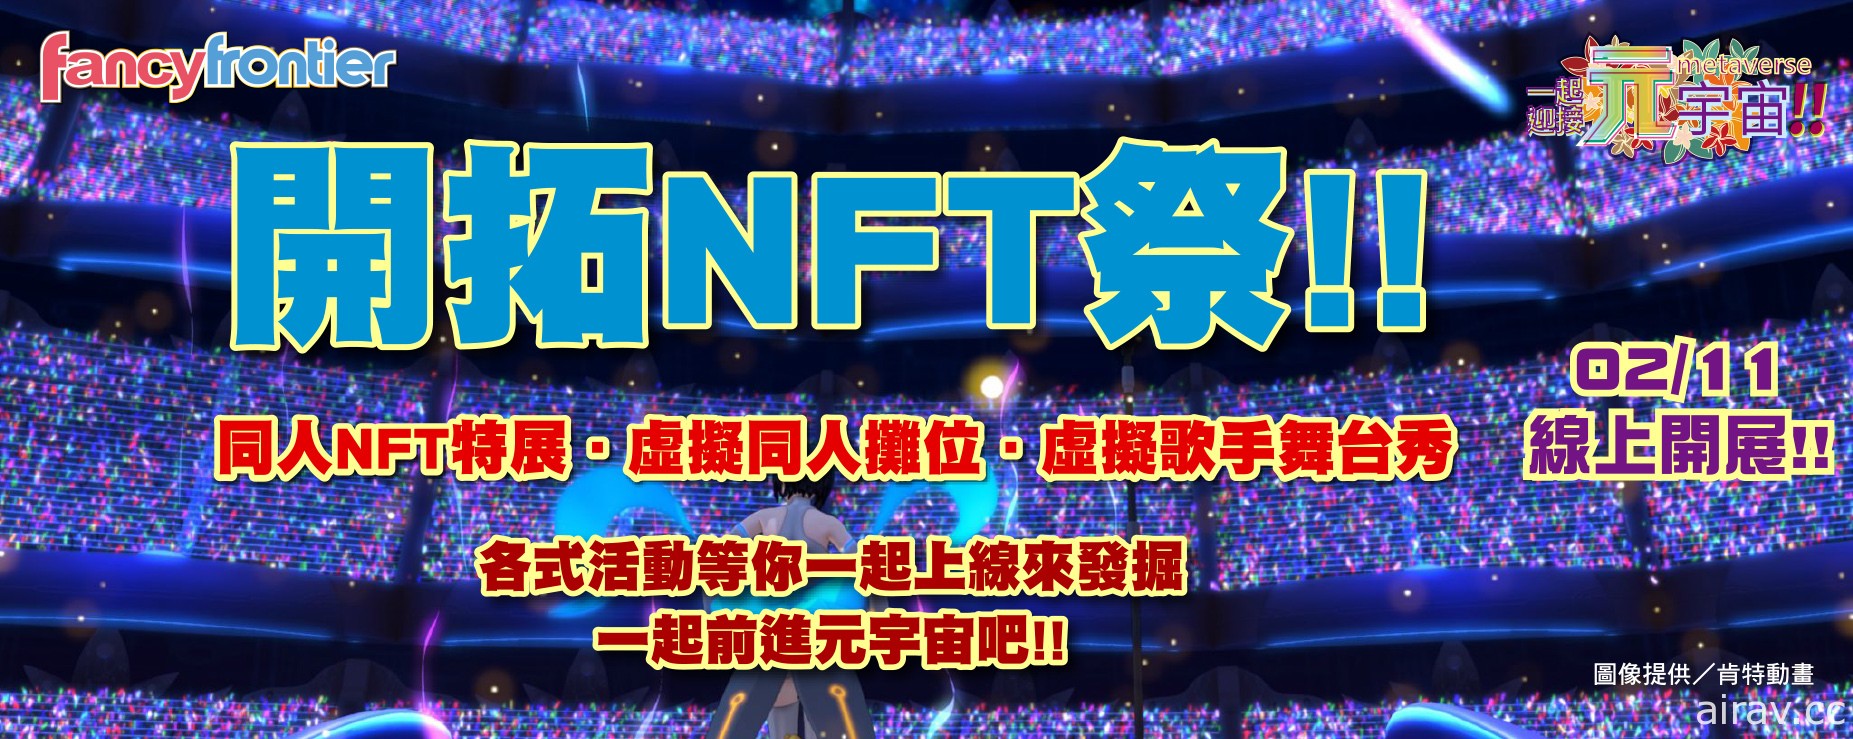 台灣動漫同人 NFT 特展「開拓 NFT 祭」將於 2/11 登場